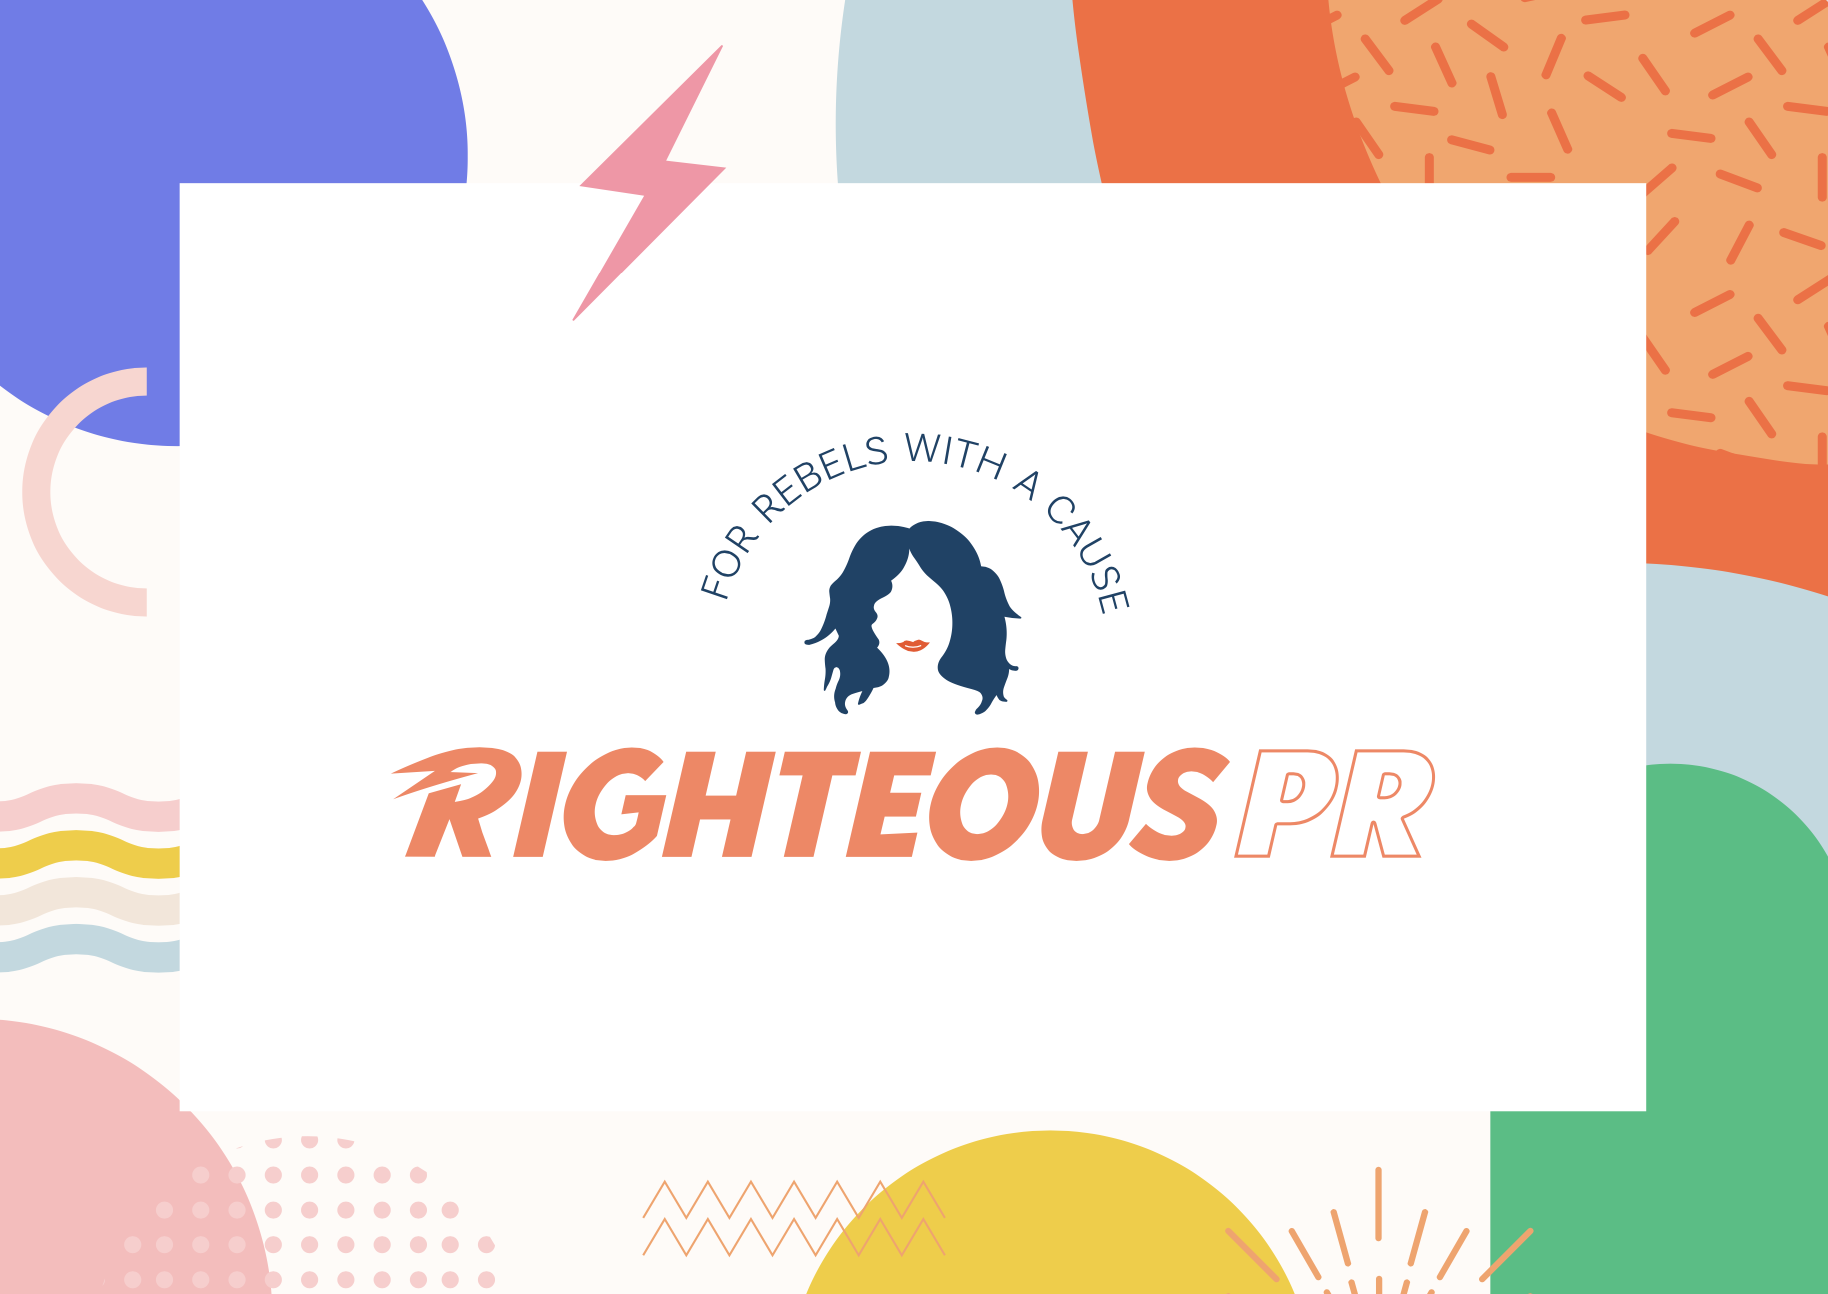 Righteous PR - Branding by Melbourne Designer Crystal Oliver